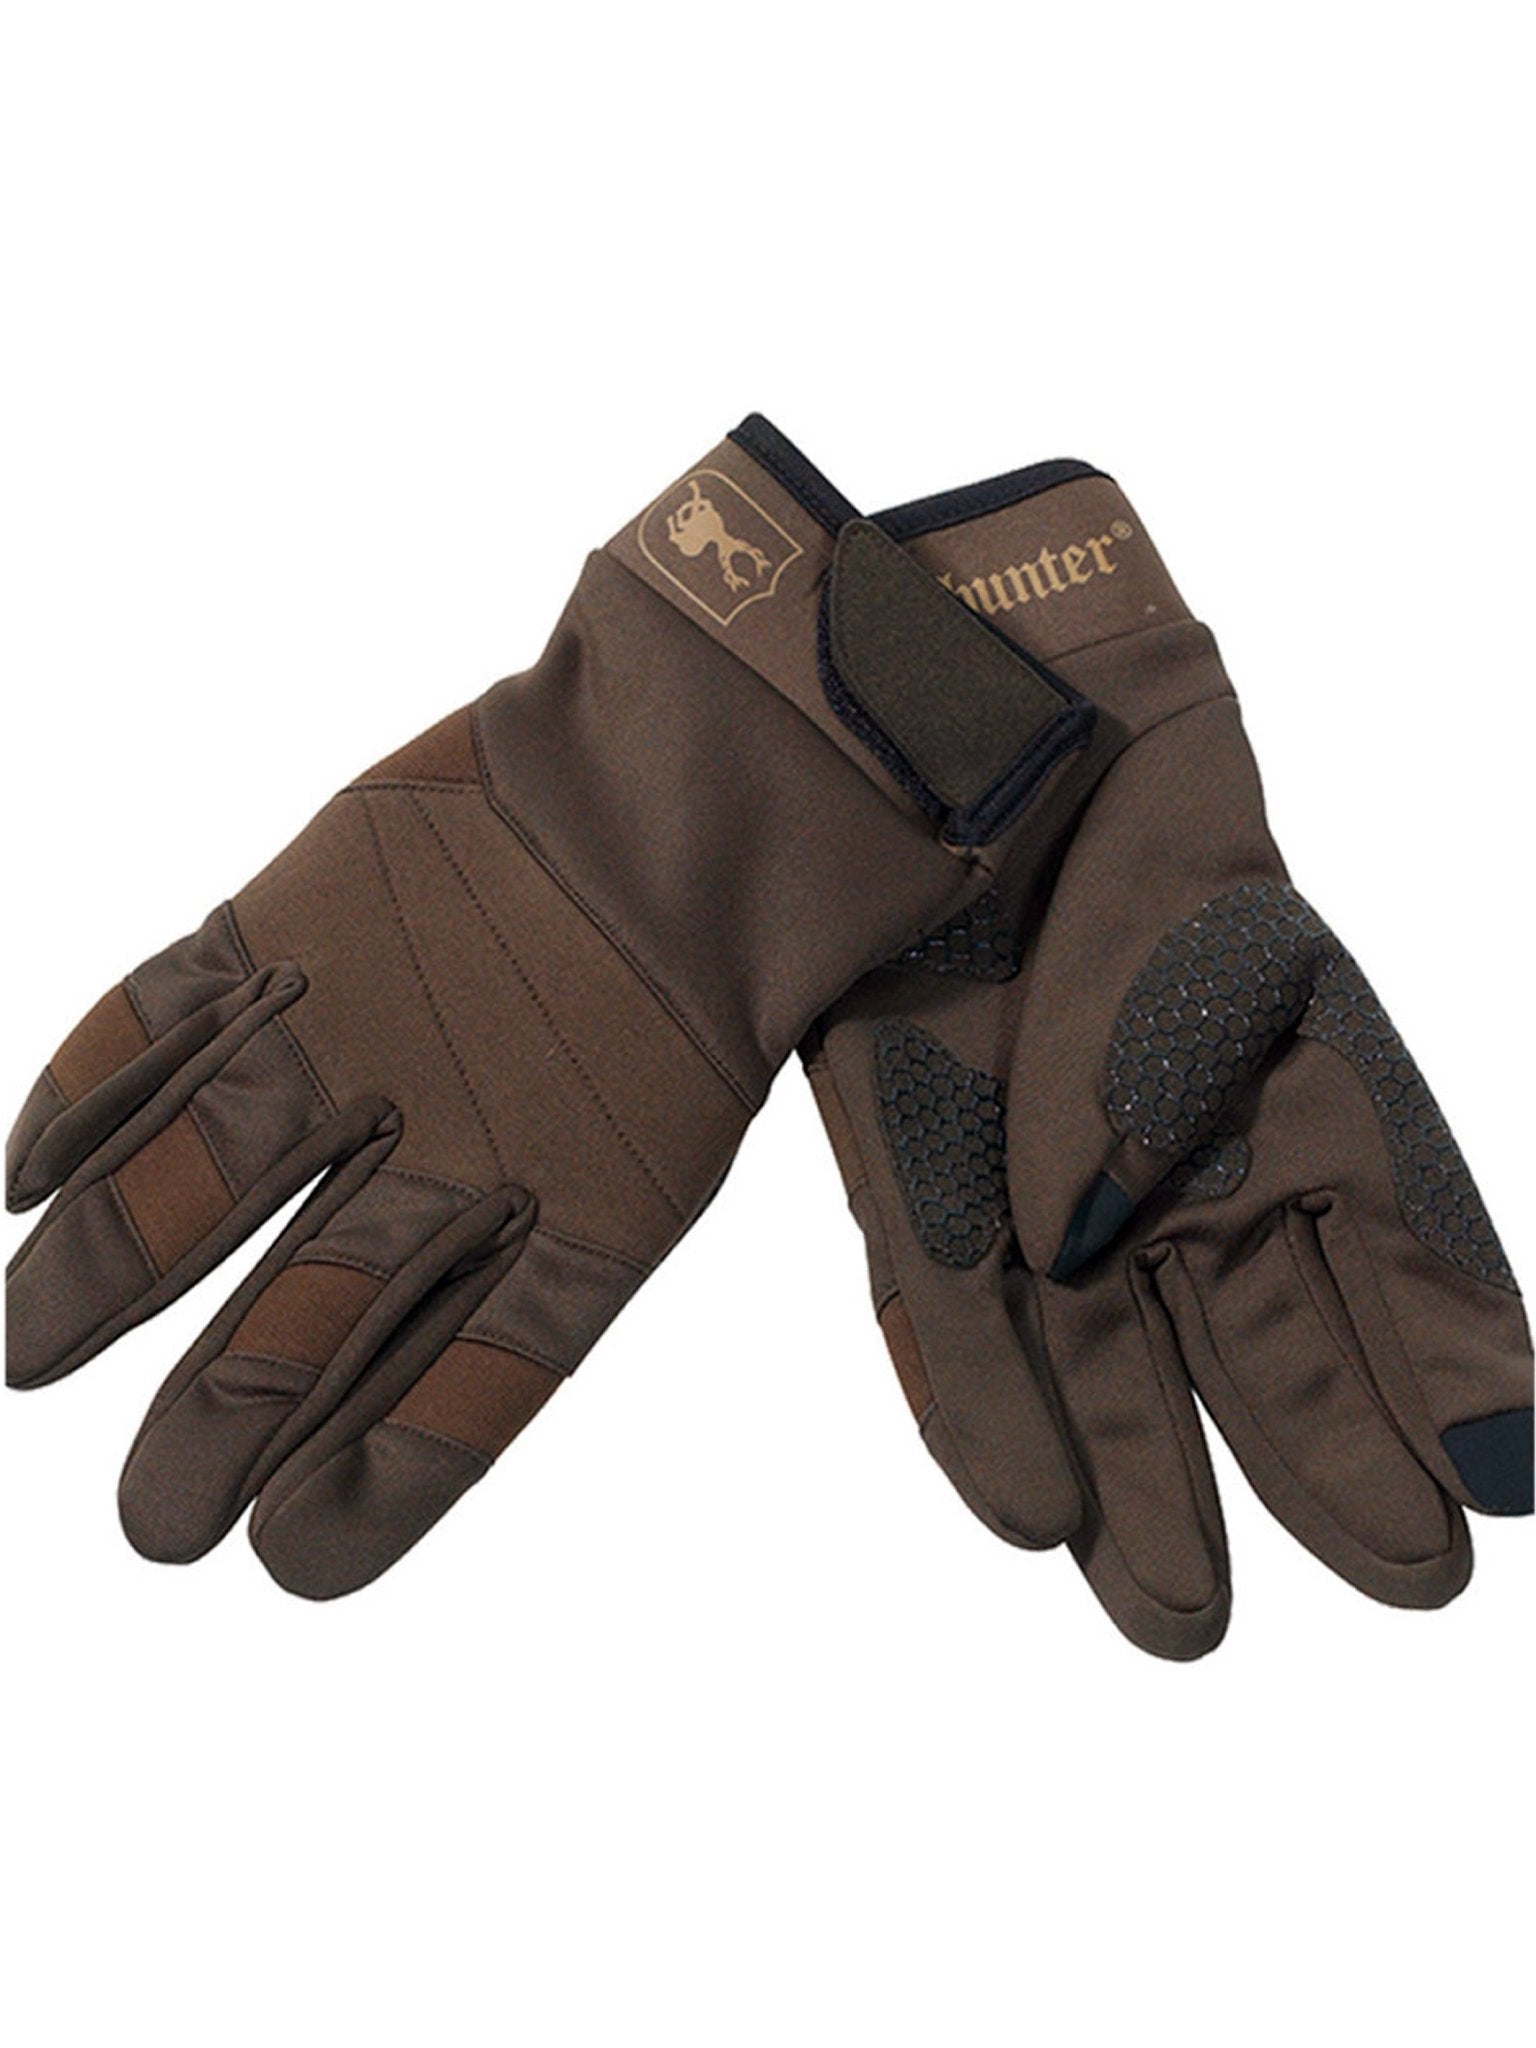 4elementsclothingDeerhunterDeerhunter - Discover Gloves / Hunting / outdoor / shooting glovesGloves8646-385-M